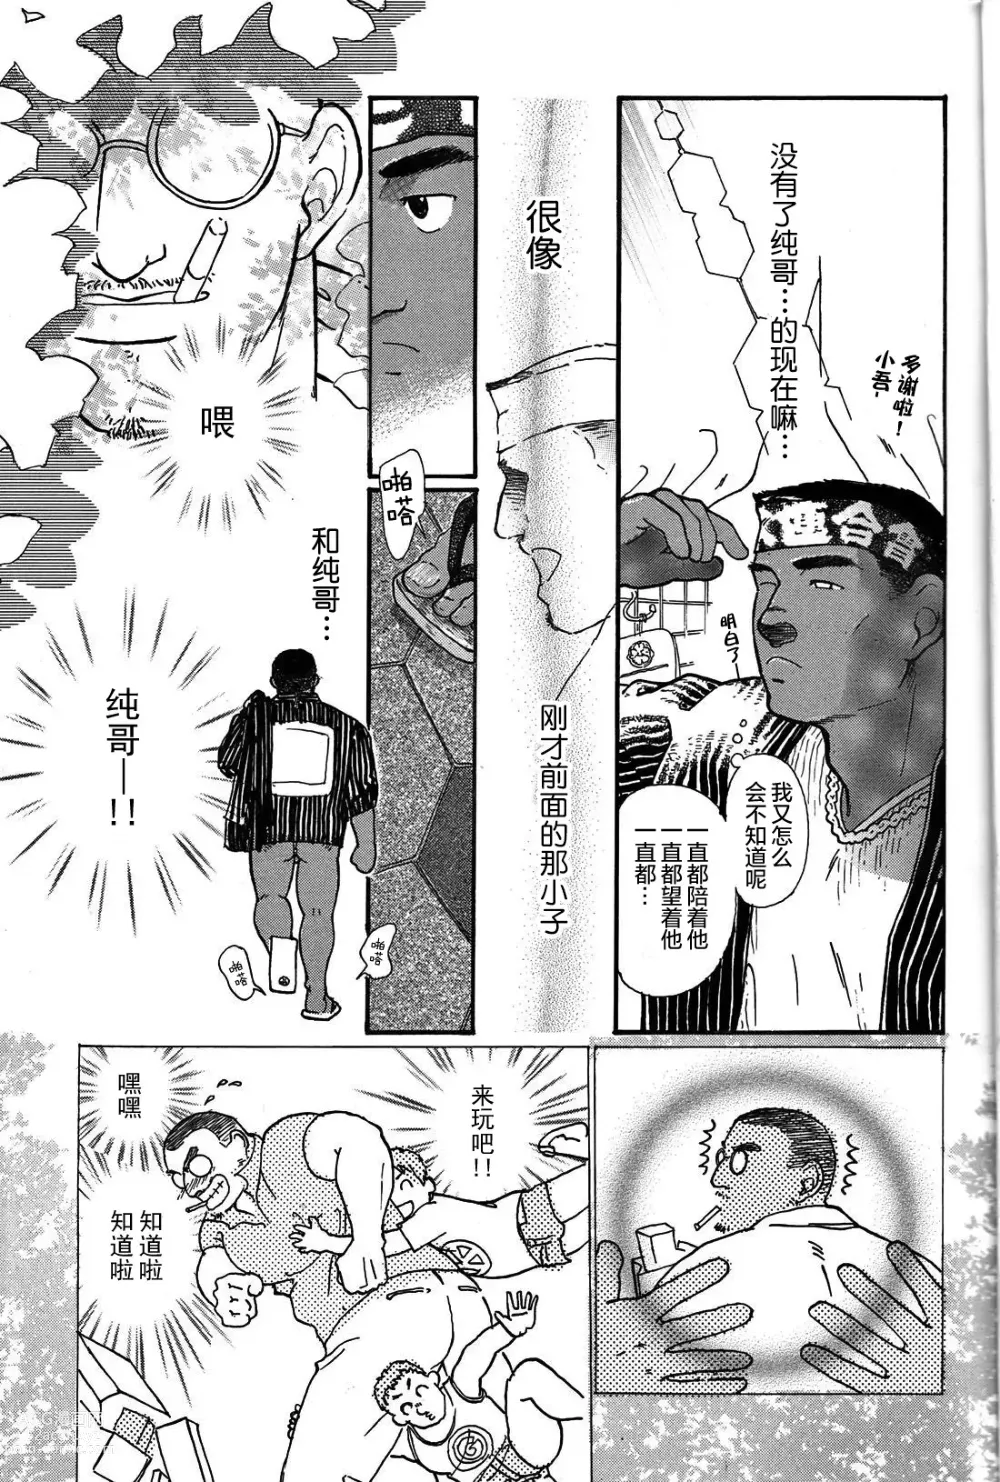 Page 10 of manga 纯情!! 第一章 「纯情」